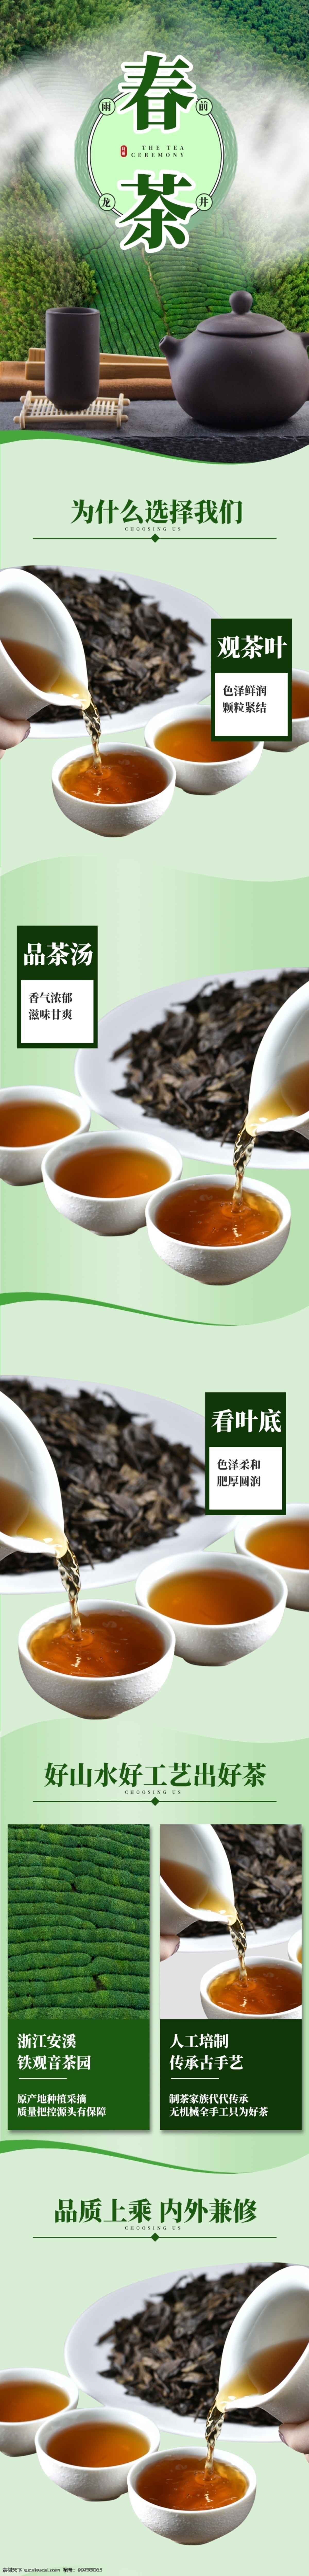 水墨 风 古典 中国 茶饮 详情 模板 绿色 水墨风 详情模板 中国风 复古详情